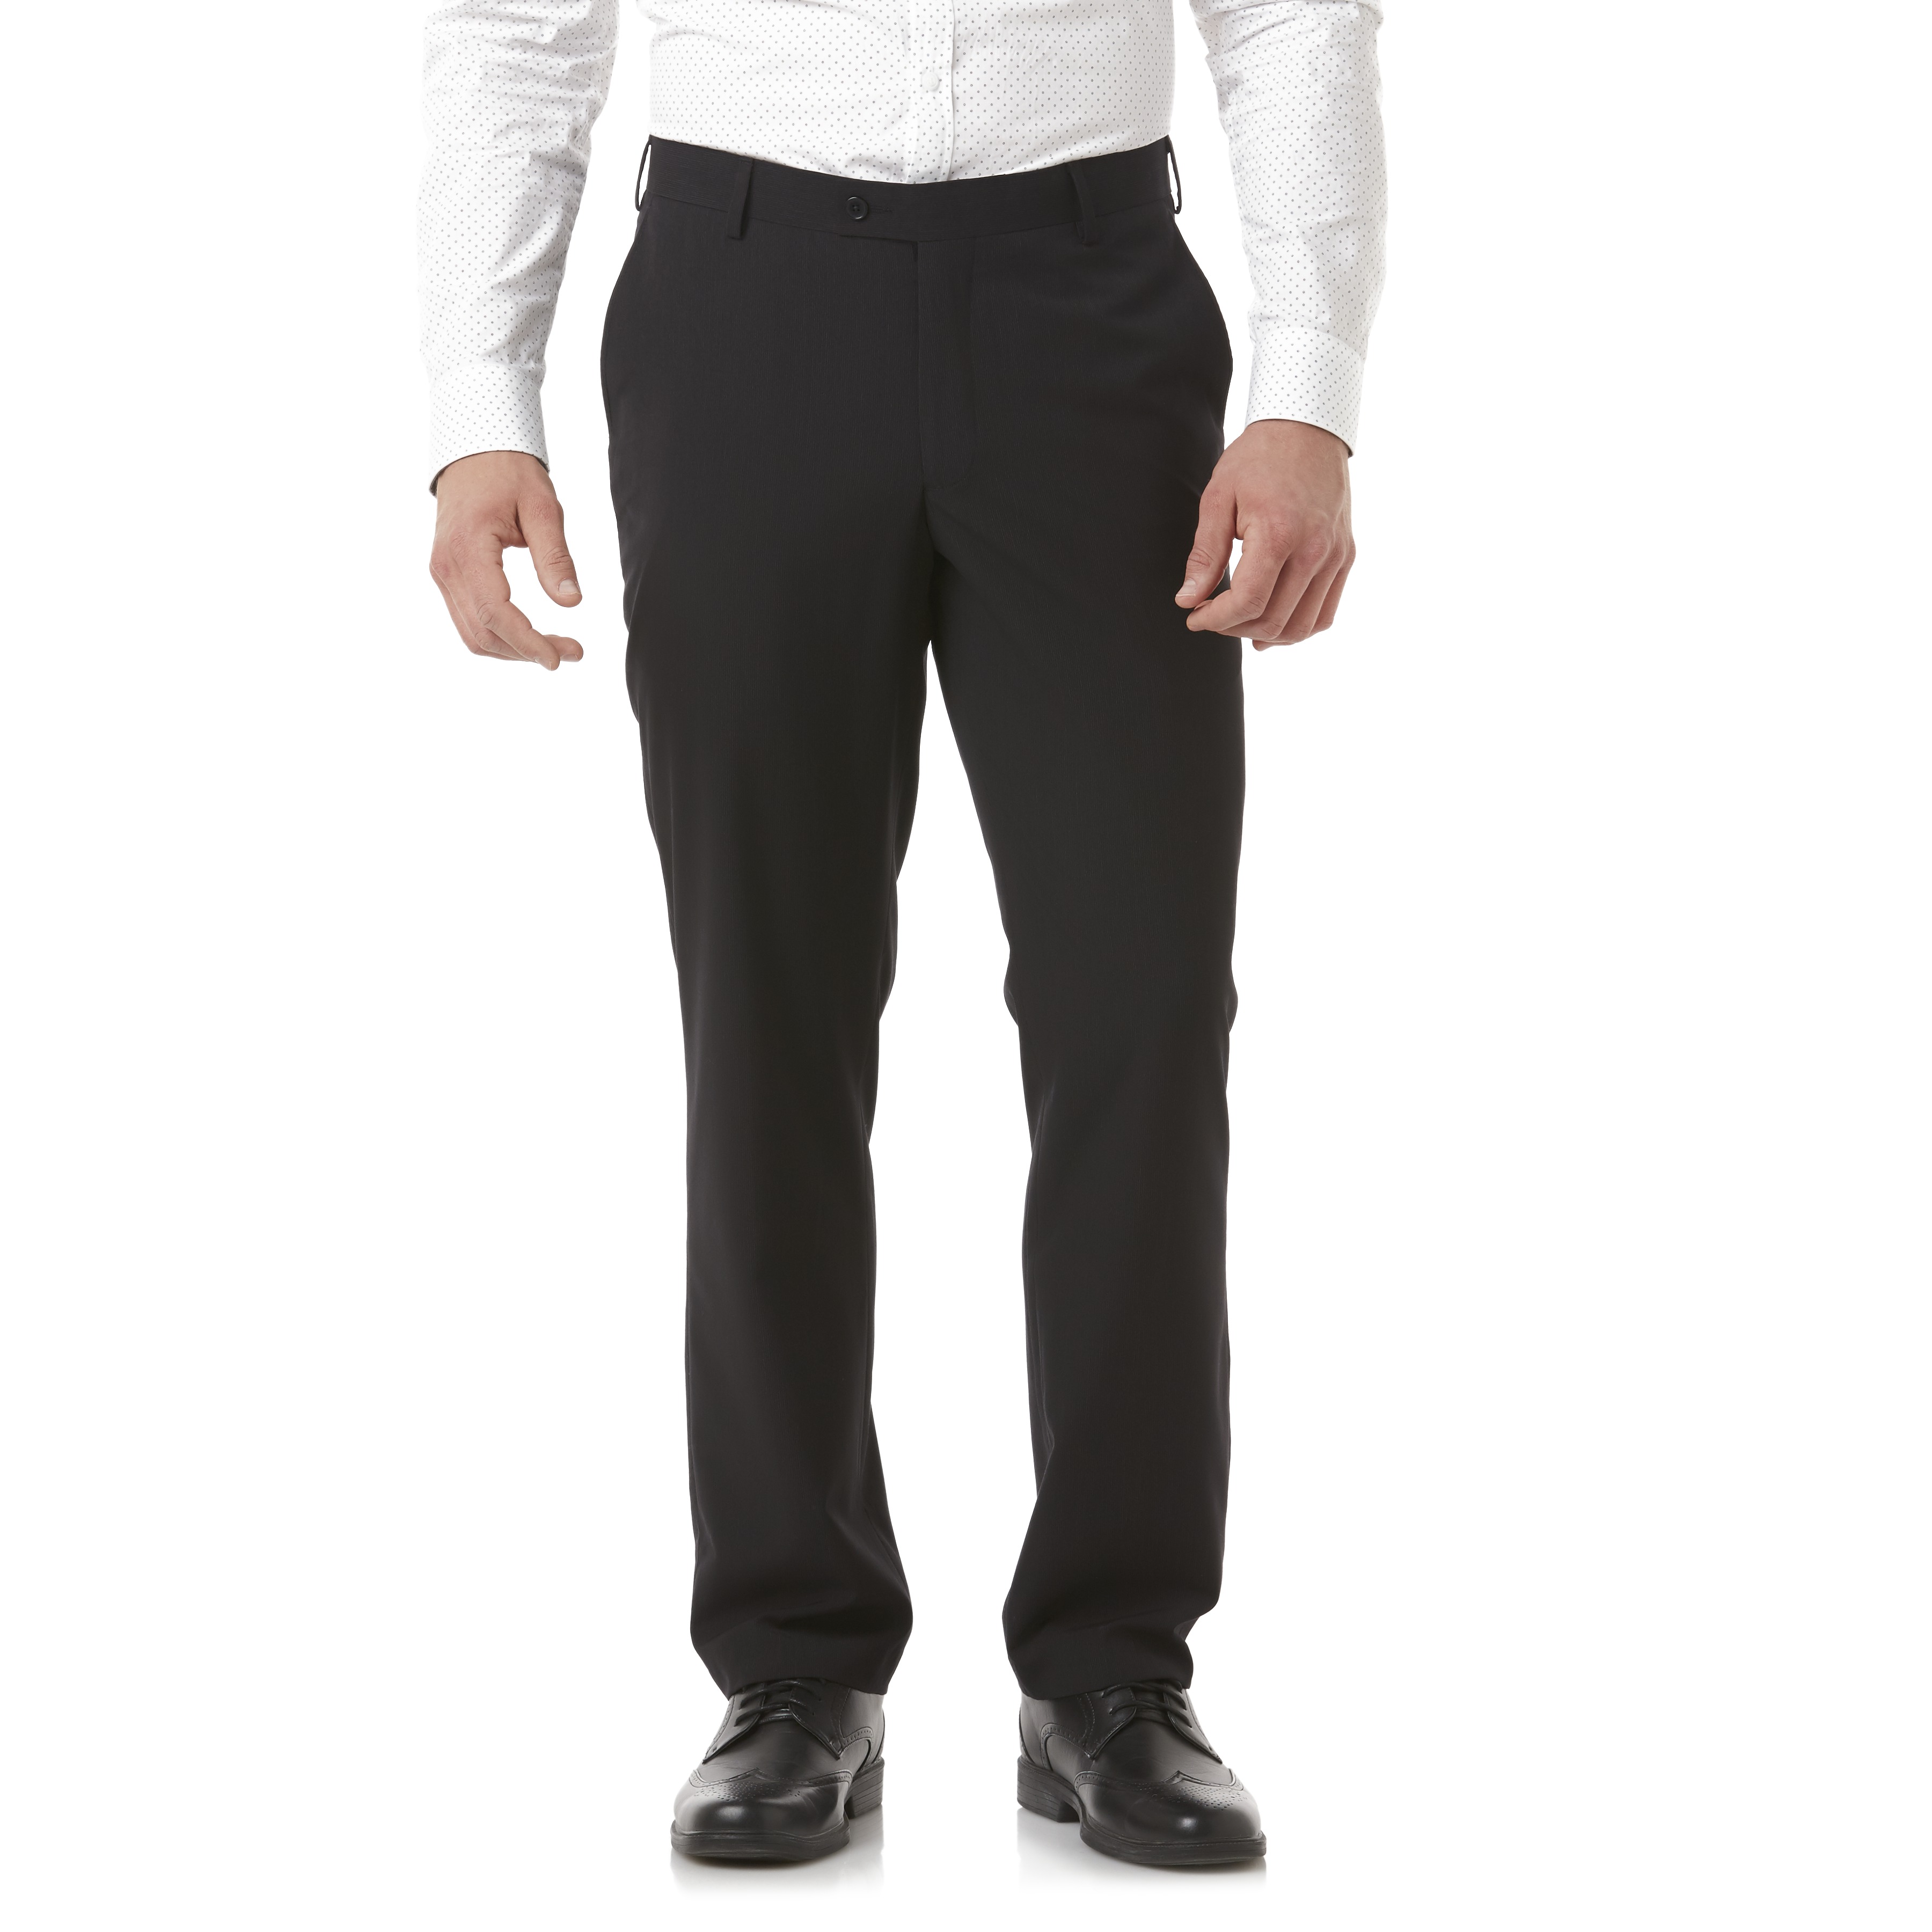 Arrow Men's Modern Fit Dress Pants - Black | Shop Your Way: Online ...